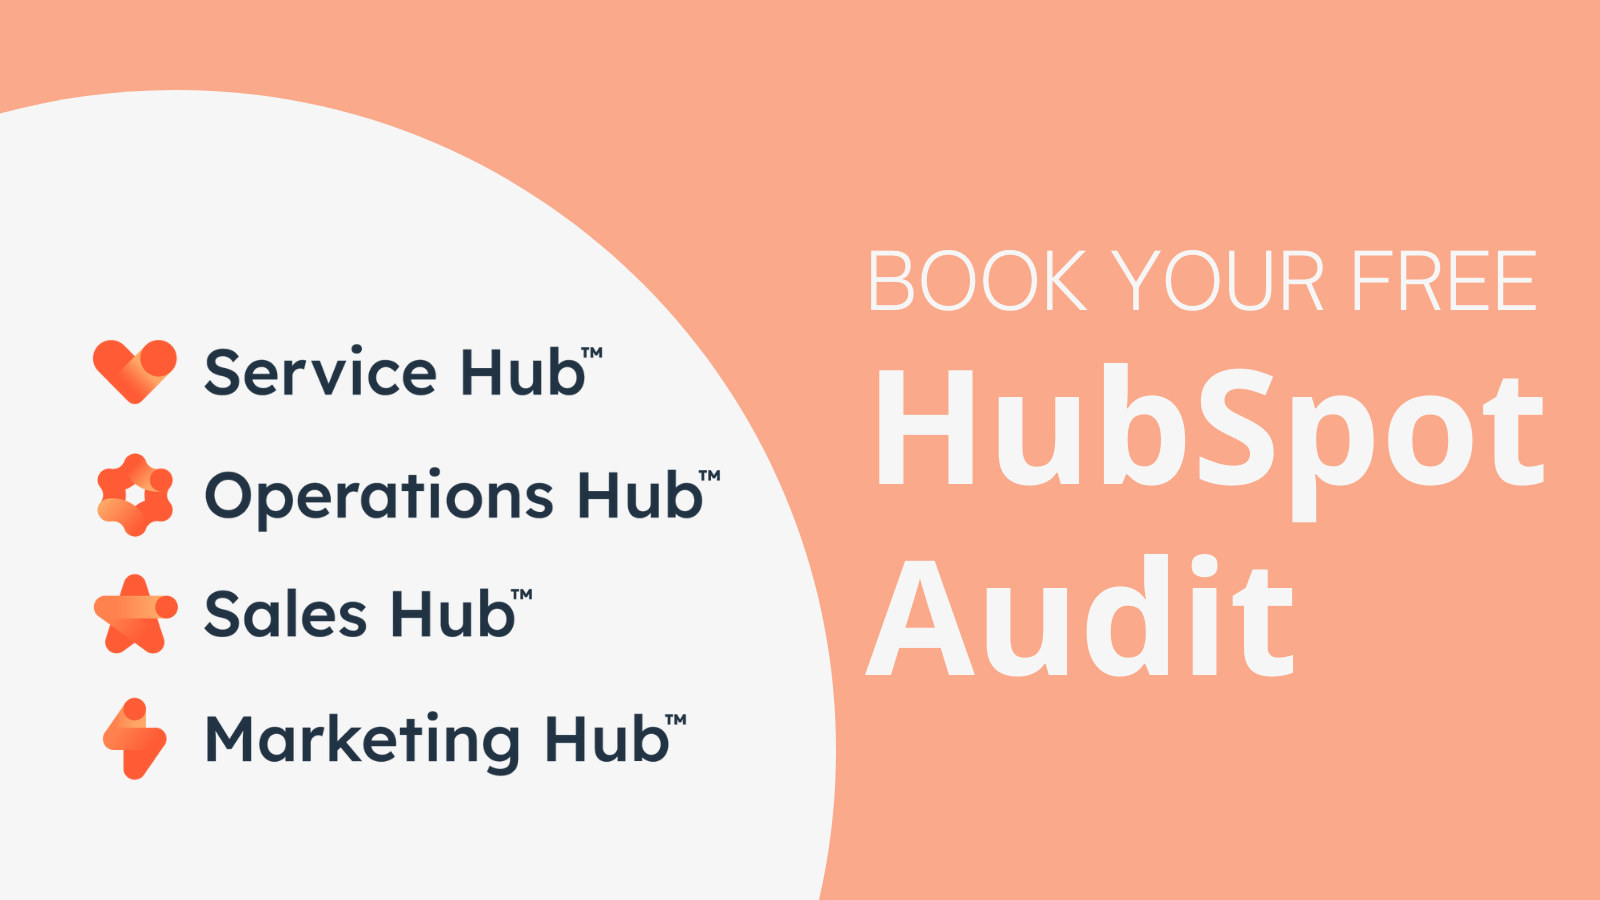 HubSpot Audit booking card